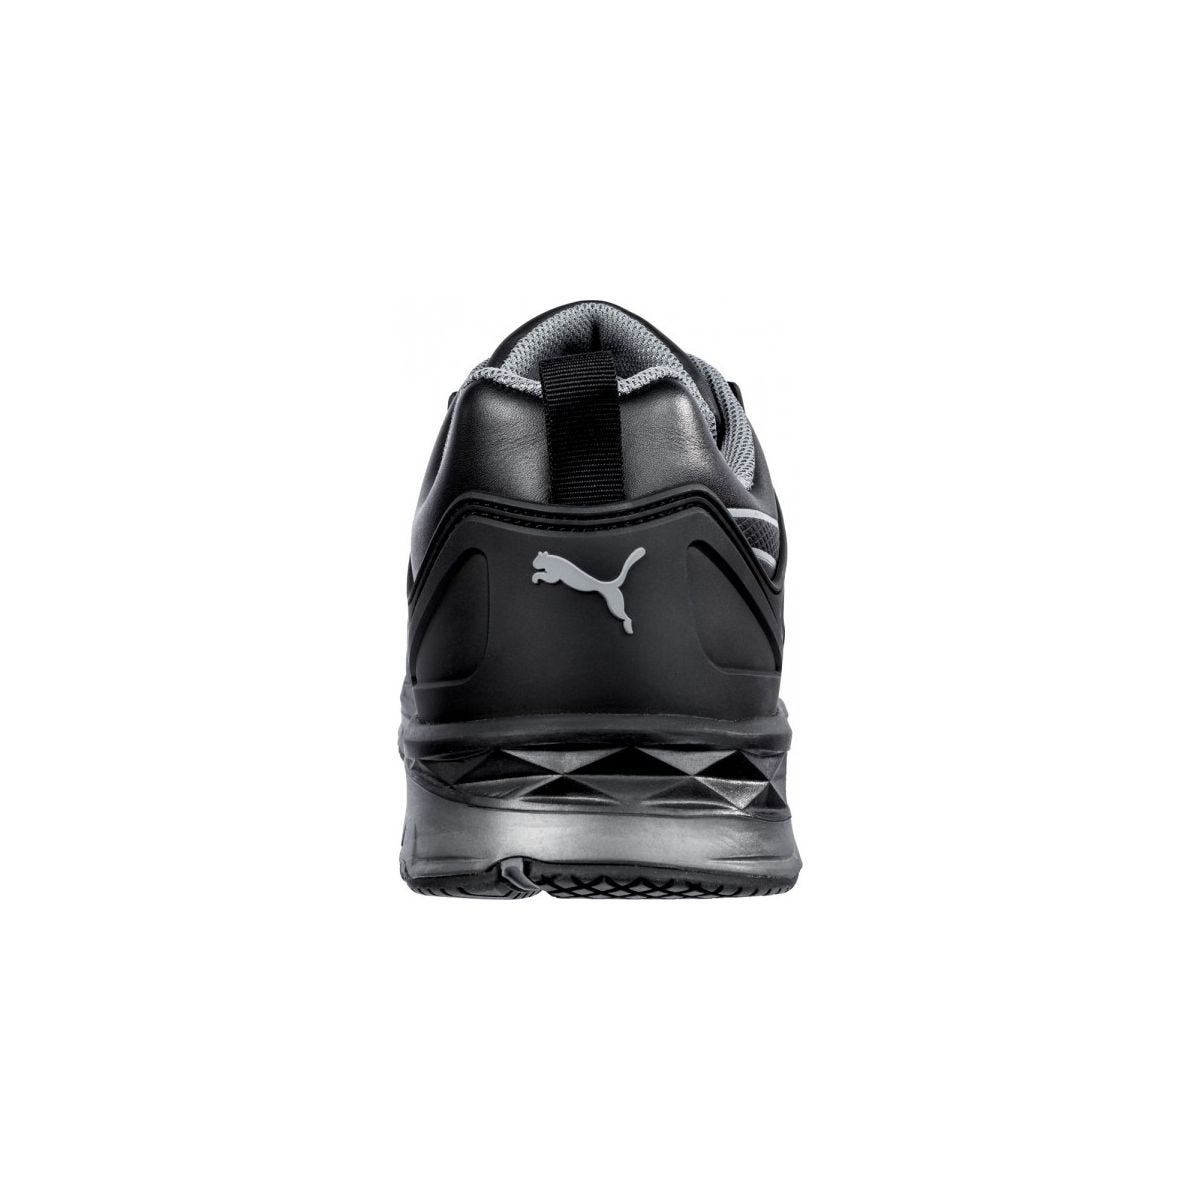 Chaussures de sécurité Velocity 2.0 Noir Low S3 - Puma - Taille 46 1